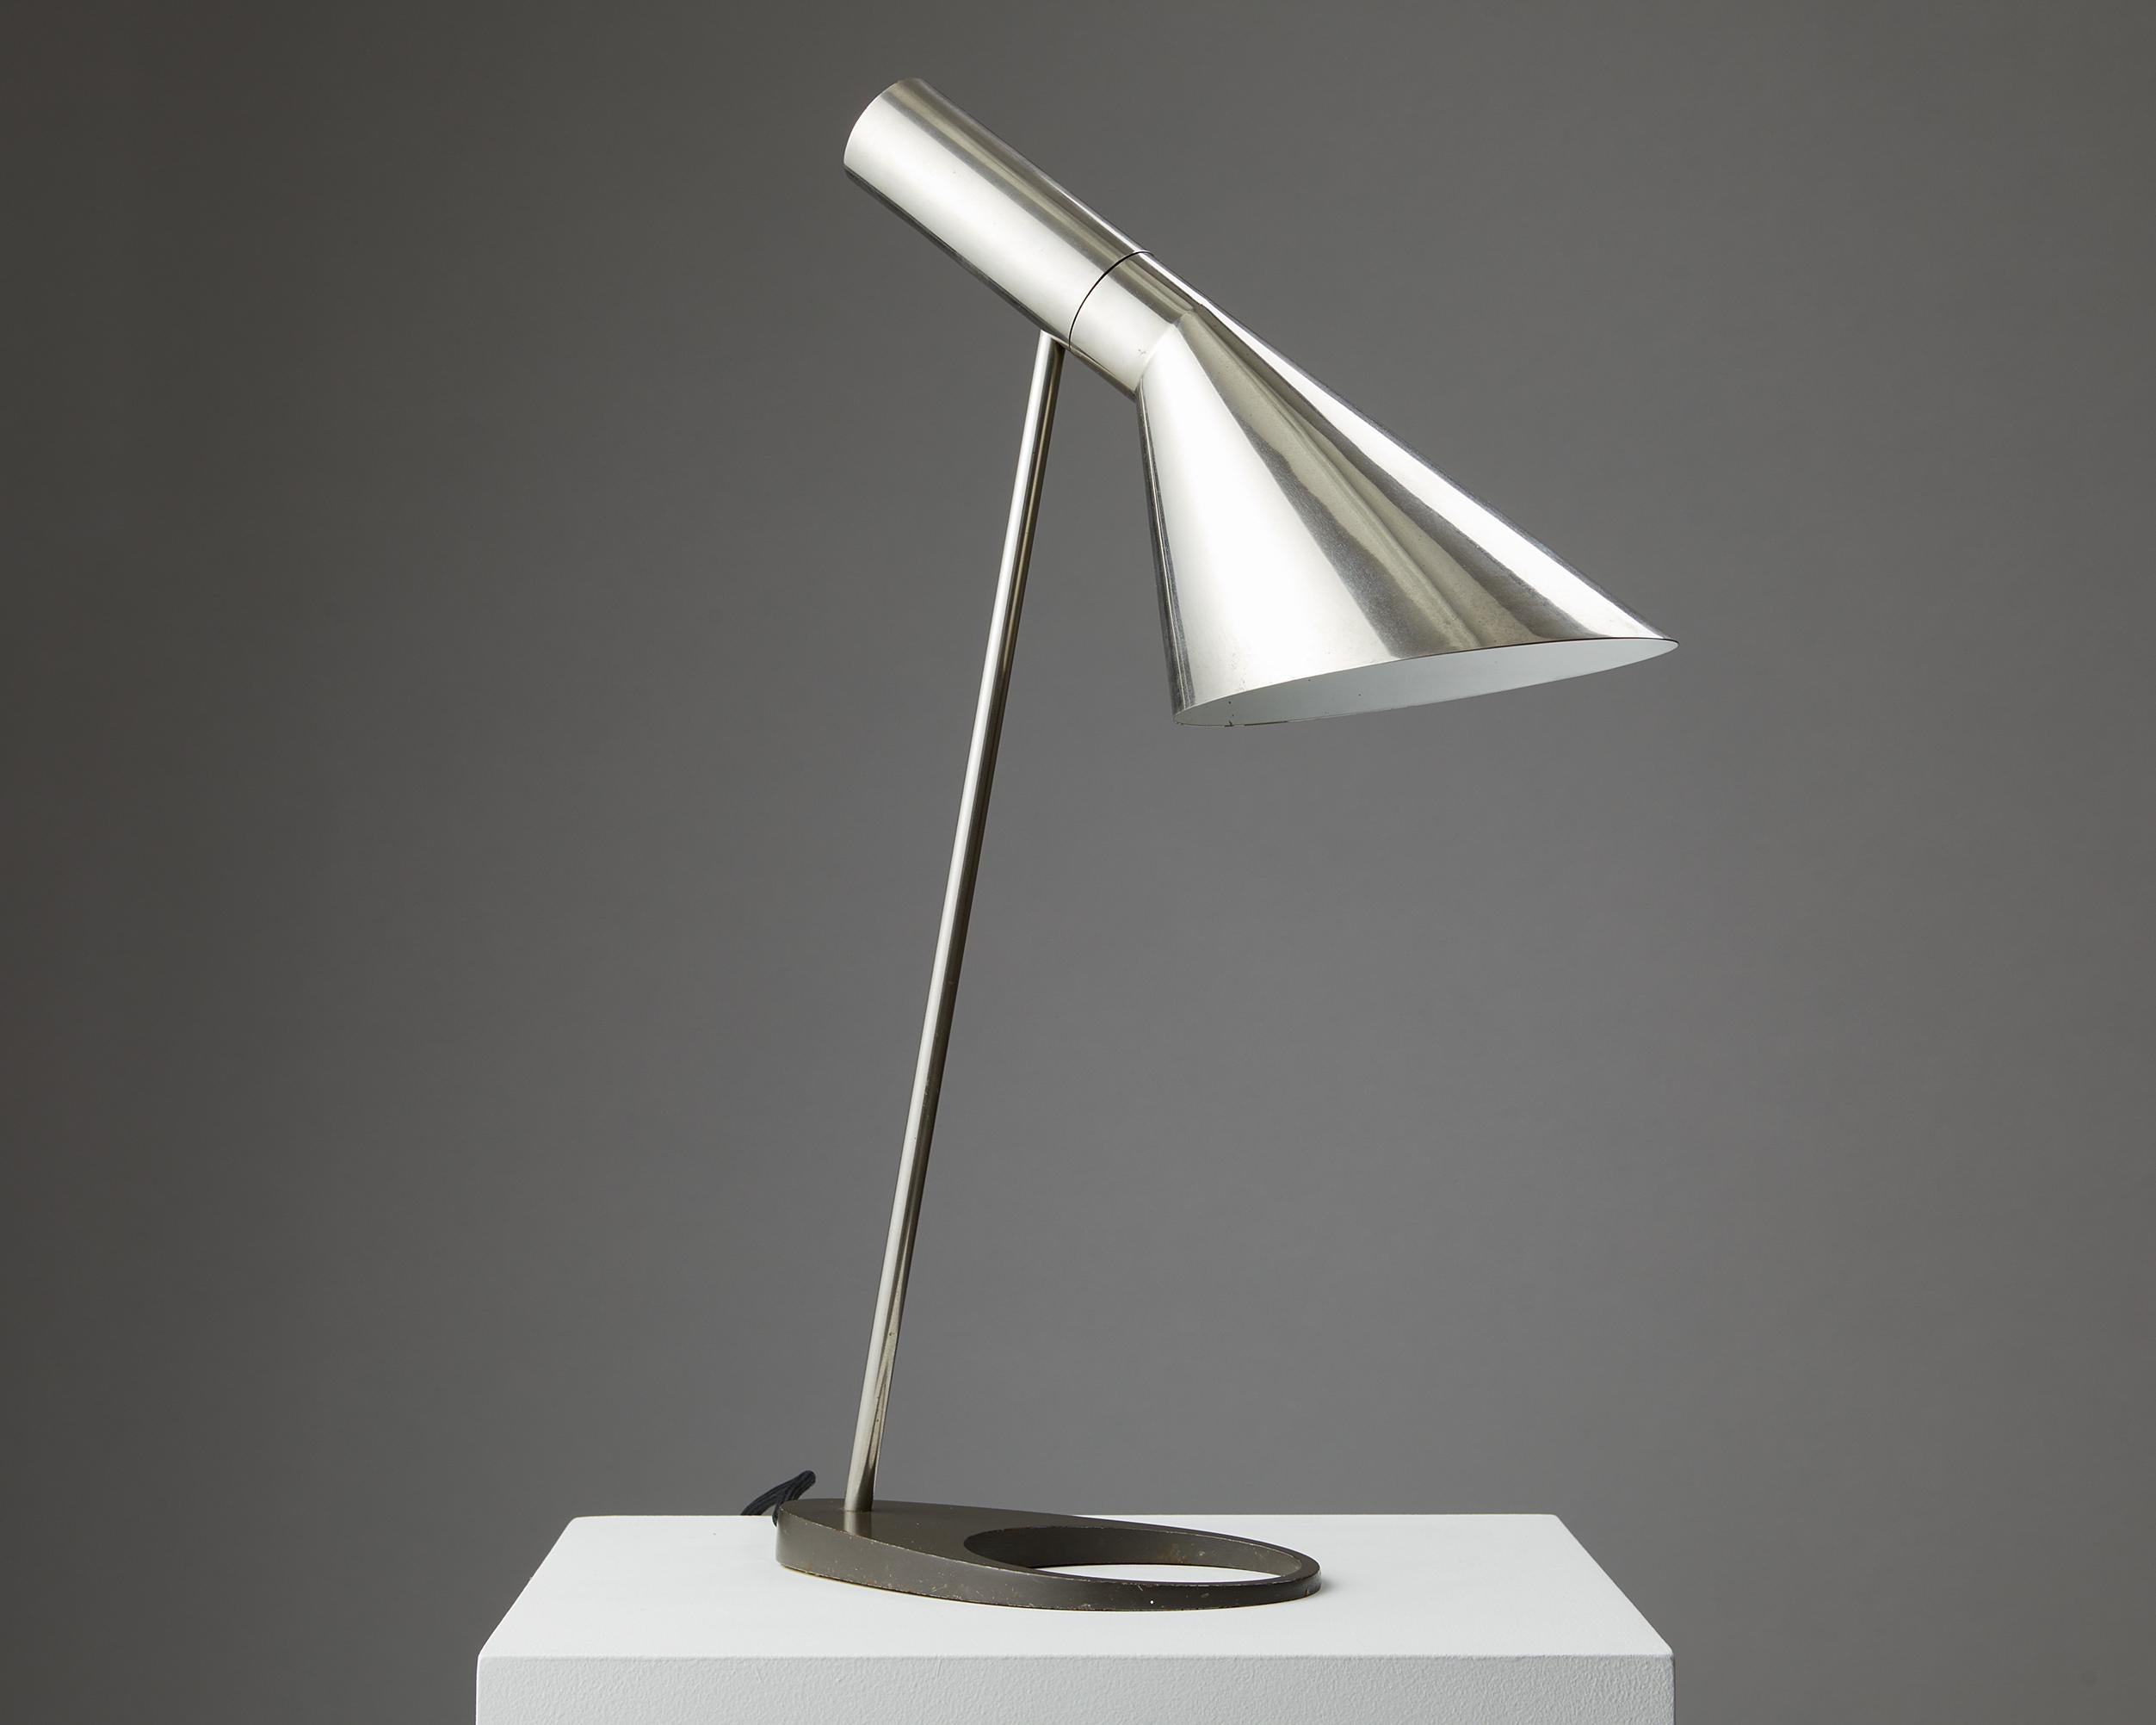 Lampe de table modèle AJ conçue par Arne Jacobsen pour Louis Poulsen Entwurf,
Danemark. 1957.
Métal chromé.

Premier modèle sans interrupteur marche/arrêt.

Abat-jour réglable.

H : 53 cm
L : 16,5 cm / 6 1/2